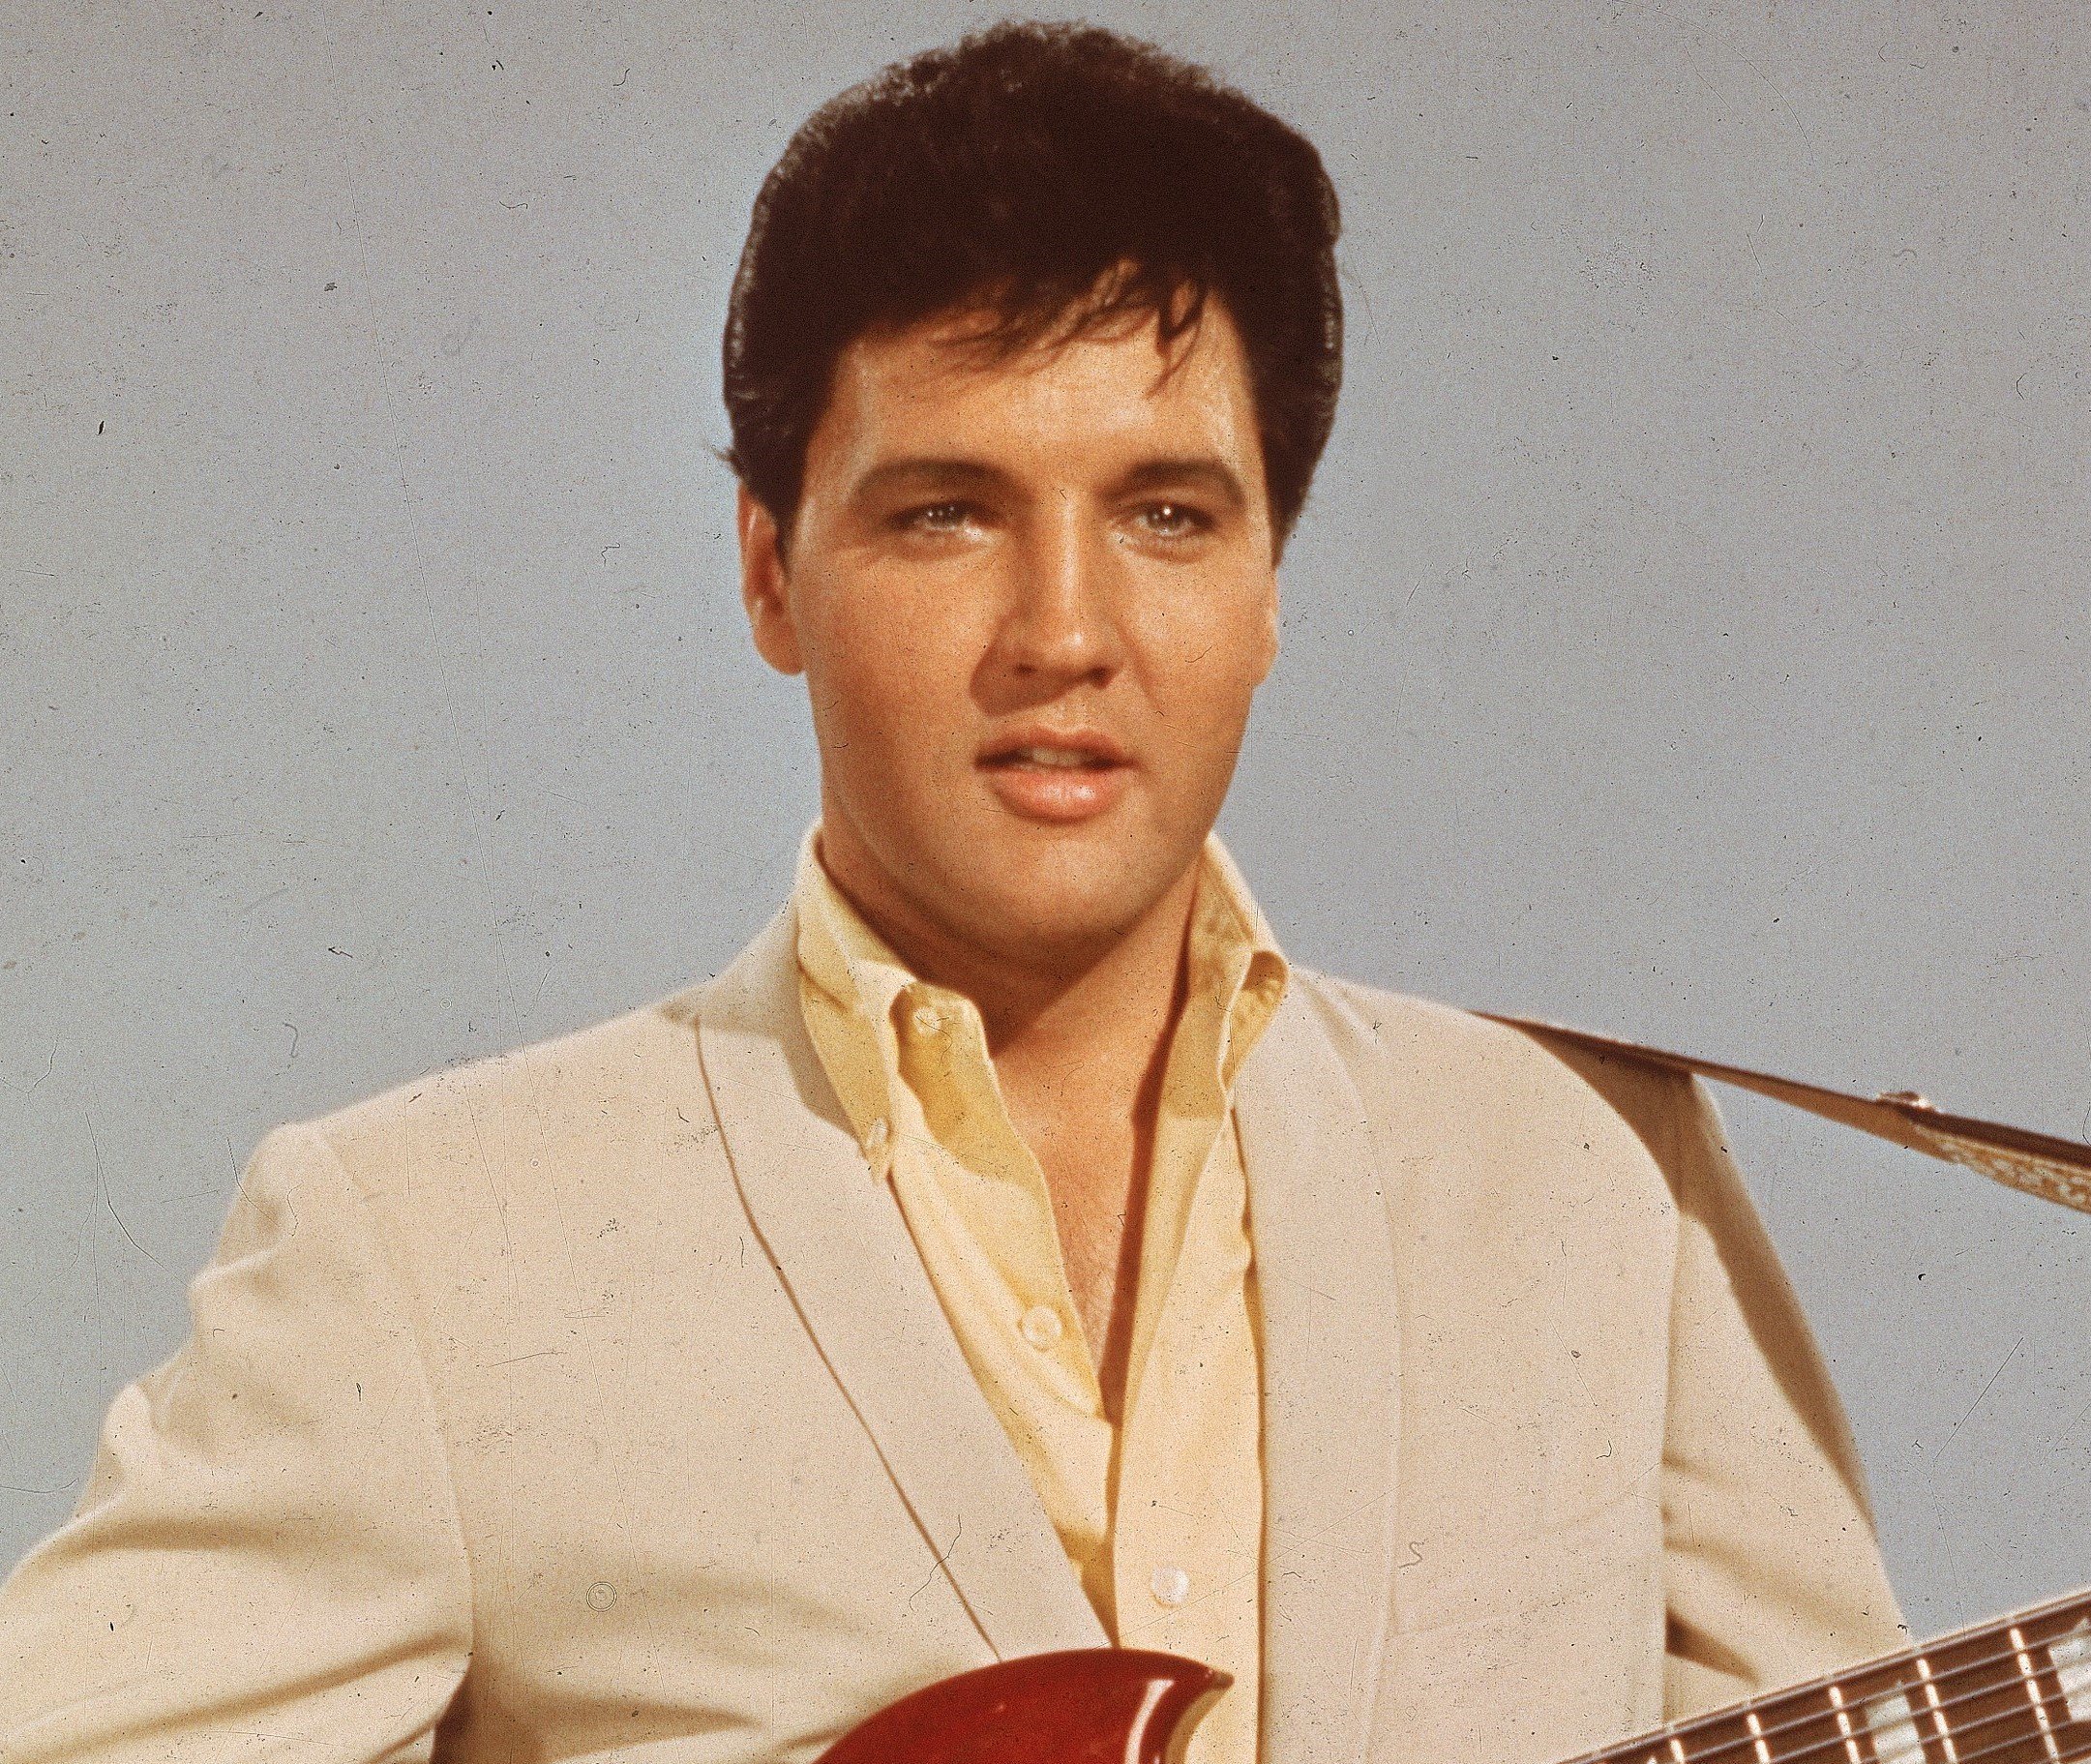 Elvis Presley wearing beige